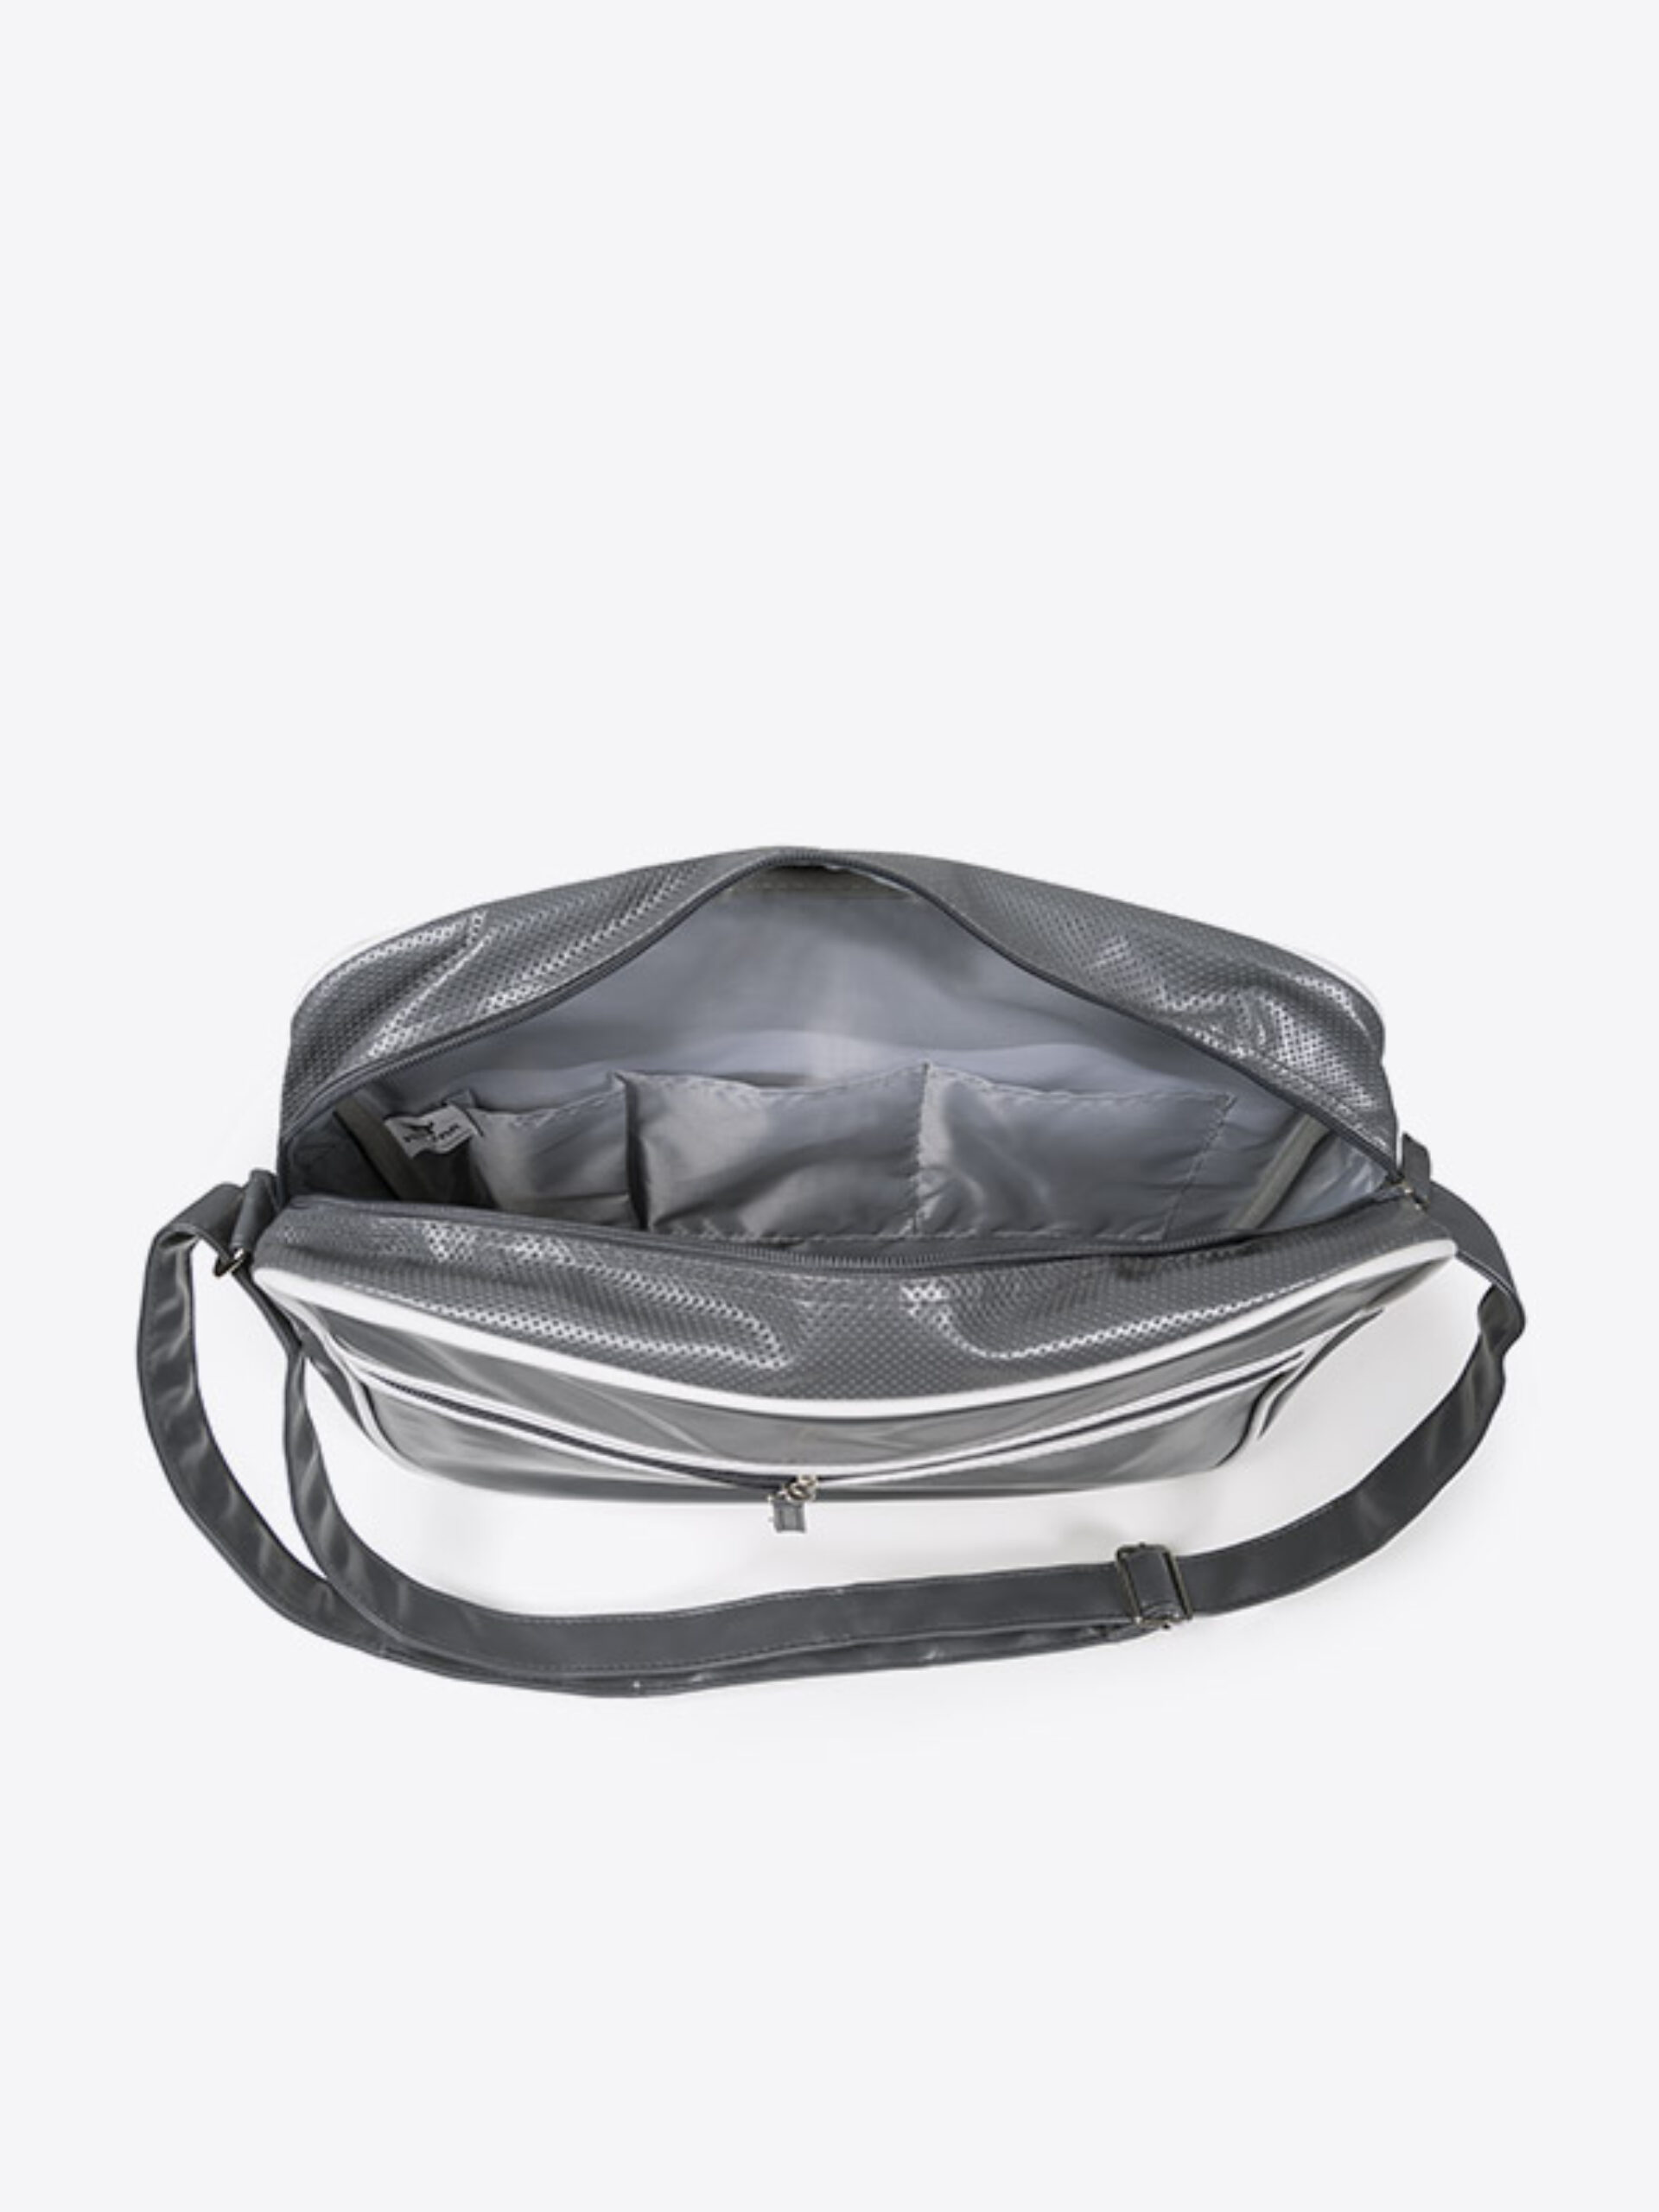 Retro Bag Easy Halfar Mit Logo Bedrucken Siebdruck Tasche Geoeffnet Faire Produktion Anthrazit